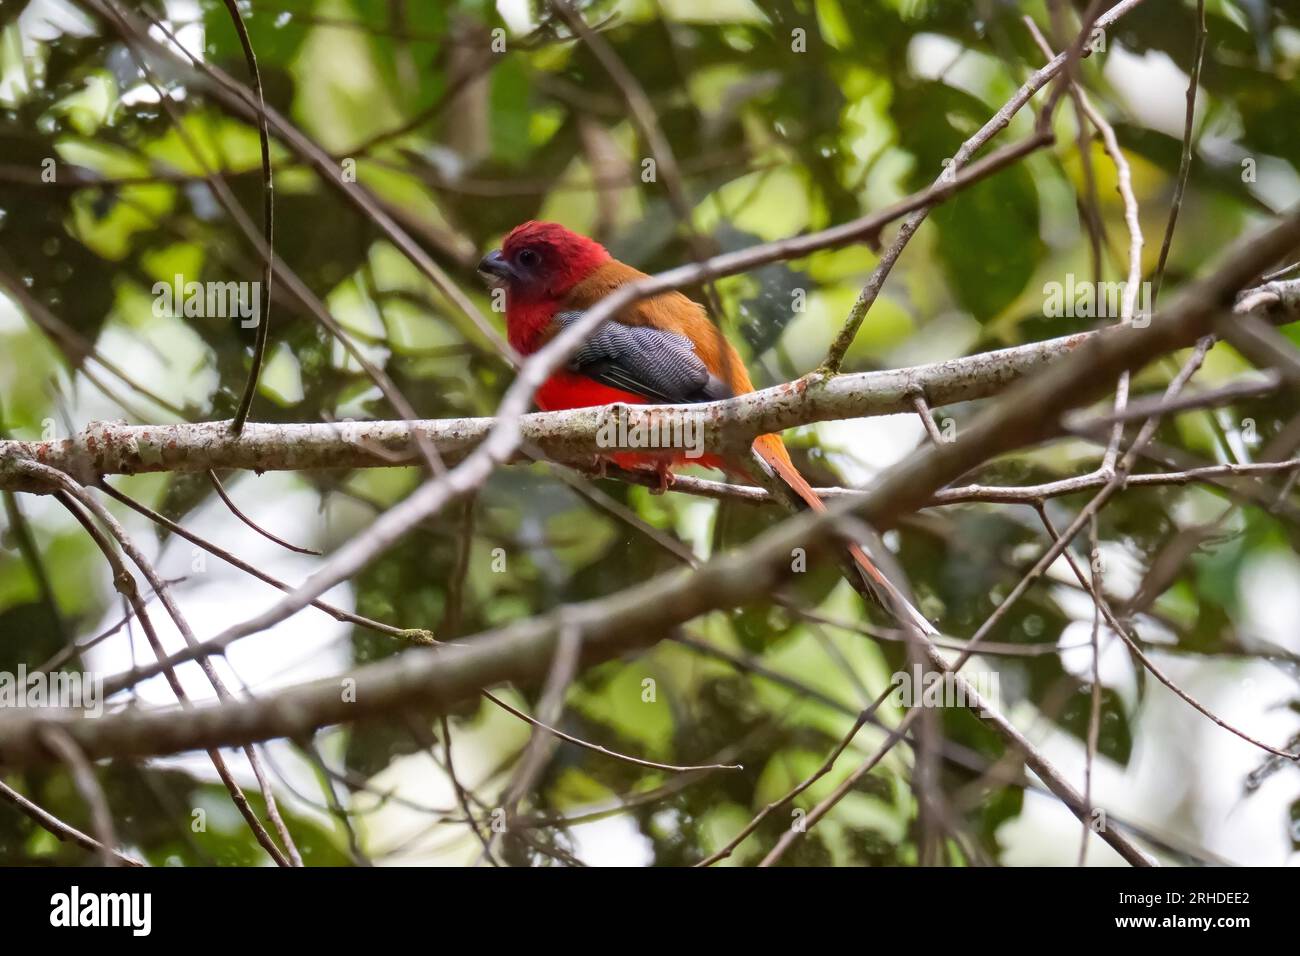 Bel oiseau trogon à tête rouge (Harpactes erythrocephalus) perché sur une branche dans l'environnement de brindilles de la nature. Fraser's Hill, Malaisie Banque D'Images